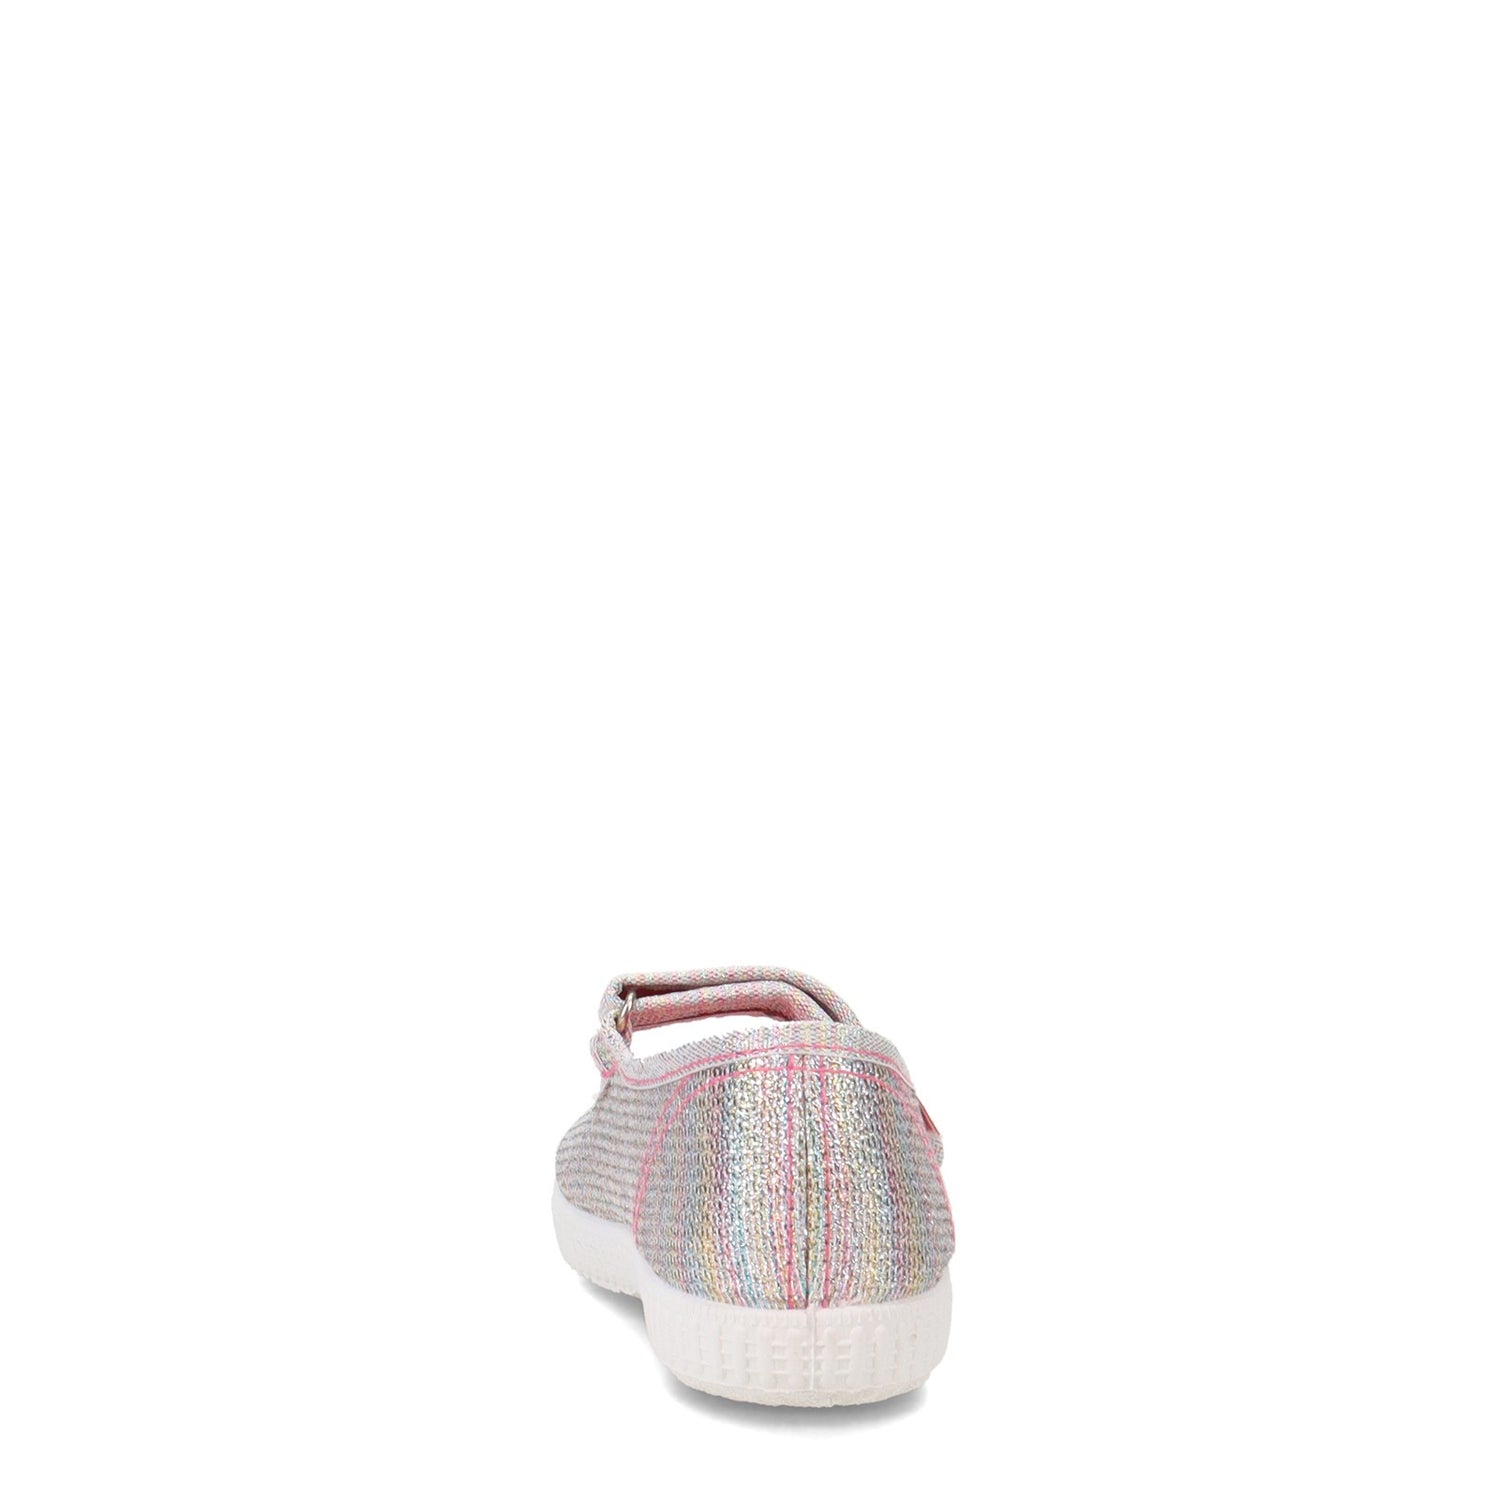 Peltz Shoes  Girl's Cienta Glitter Mary Jane Sneaker - Toddler & Little Kid RAINBOW 56083.96